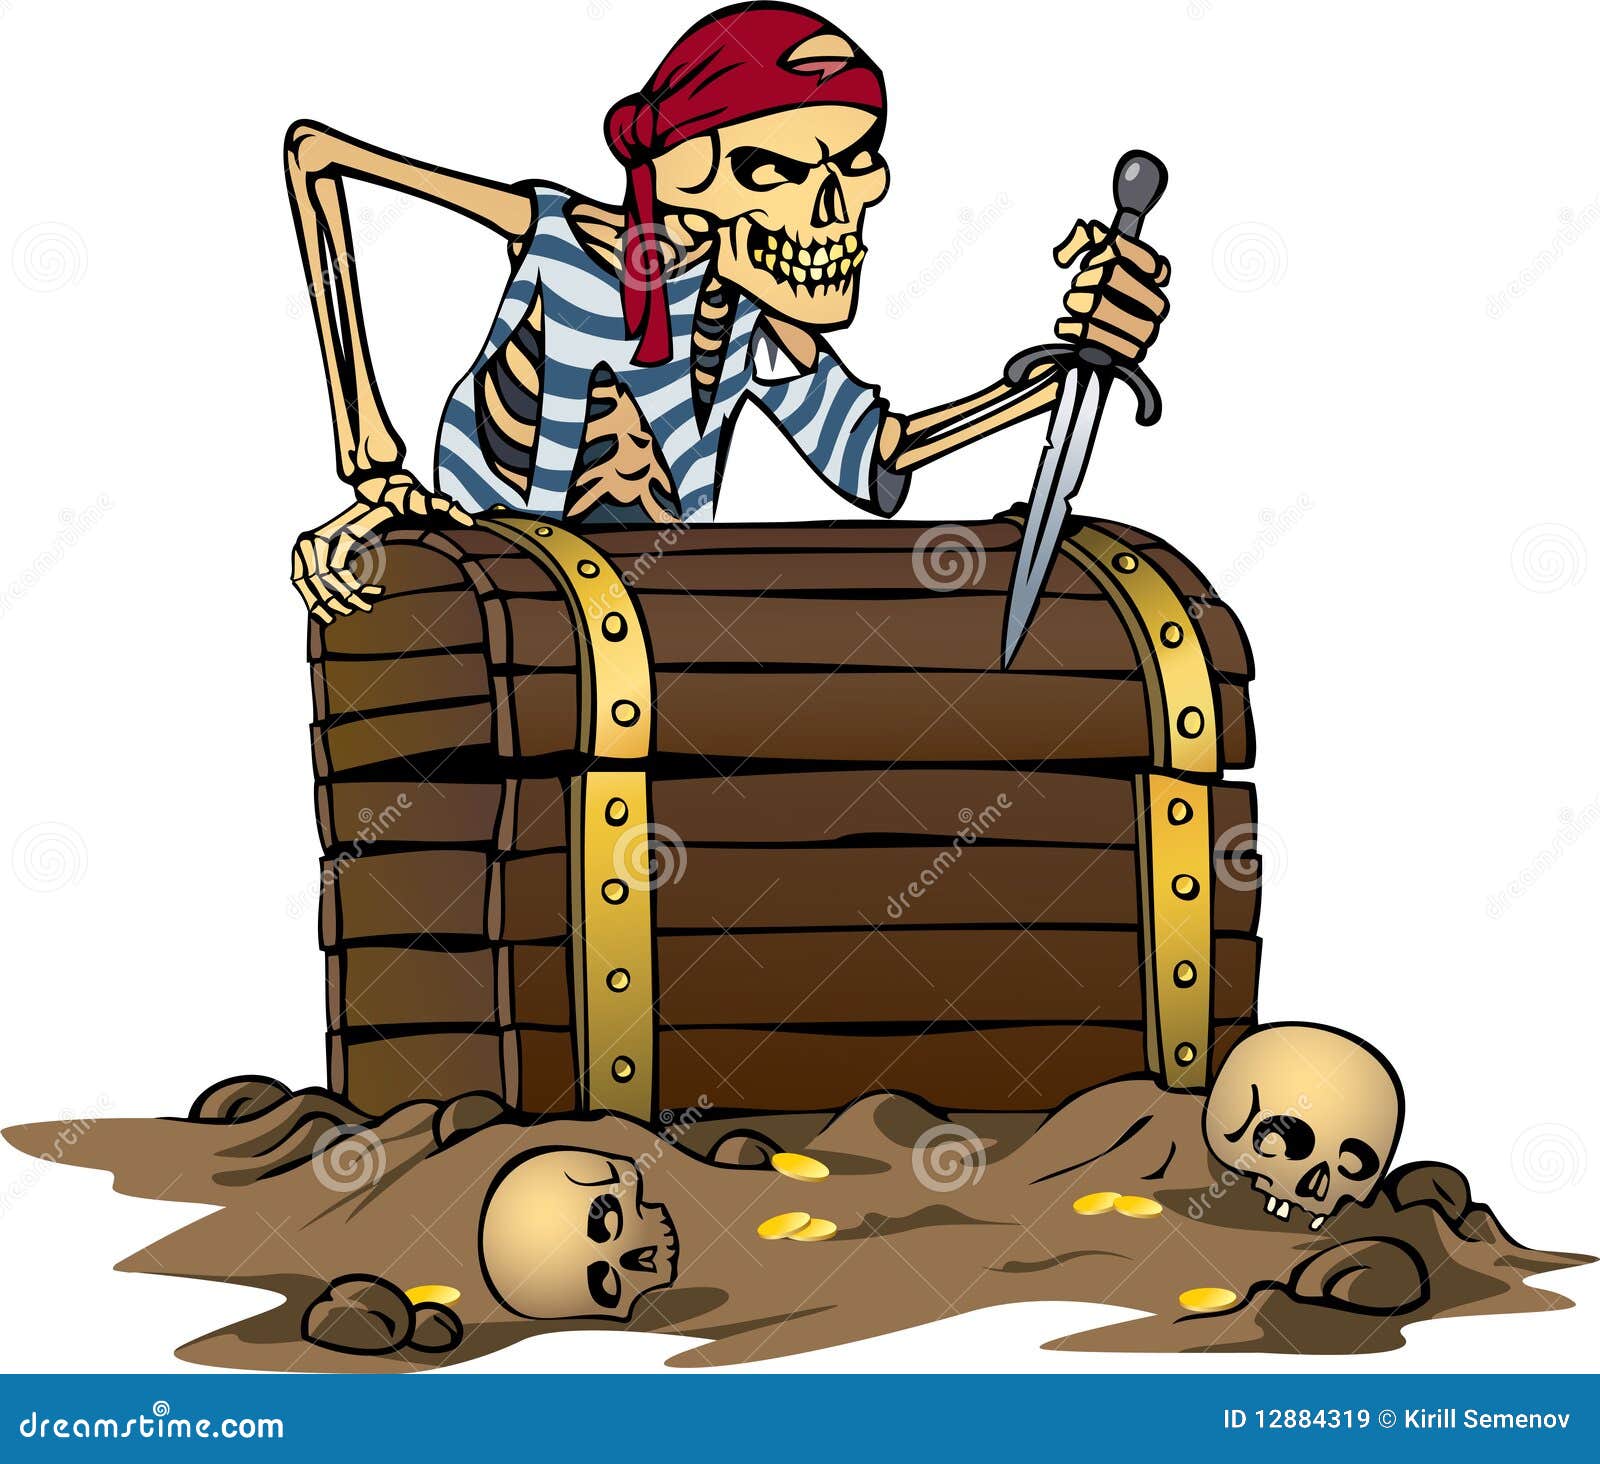 Пират из острова сокровищ сканворд 5. Пиратский сундук. Клад пиратов. Пиратский сундук с сокровищами. Сундук с кладом.